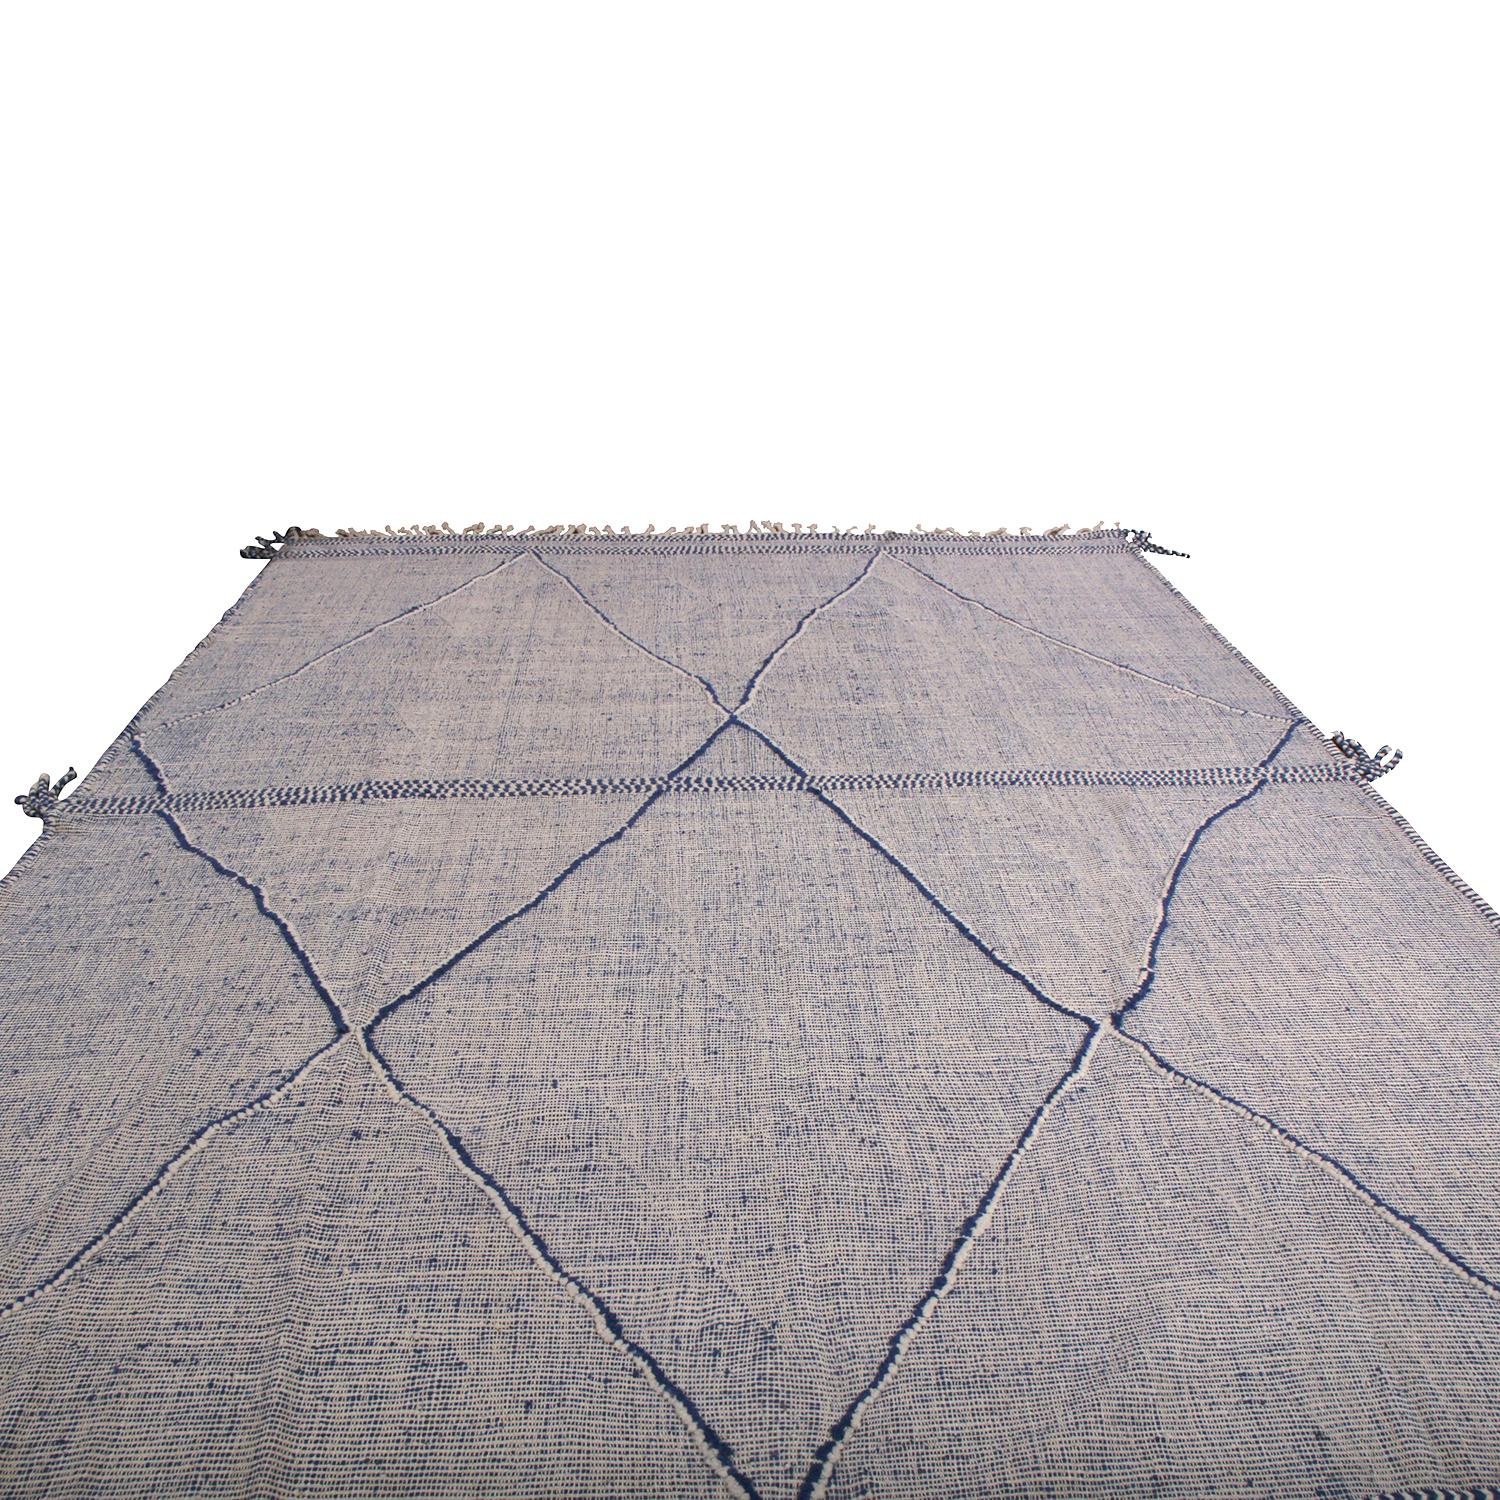 Diese Ergänzung der umfangreichen zeitgenössischen und modernen Teppichkollektion von Rug & Kilim greift die Inspiration eines klassischen marokkanischen Berberteppichs in einer neuen großformatigen und strukturierten Hoch-Tief-Produktion auf. Die